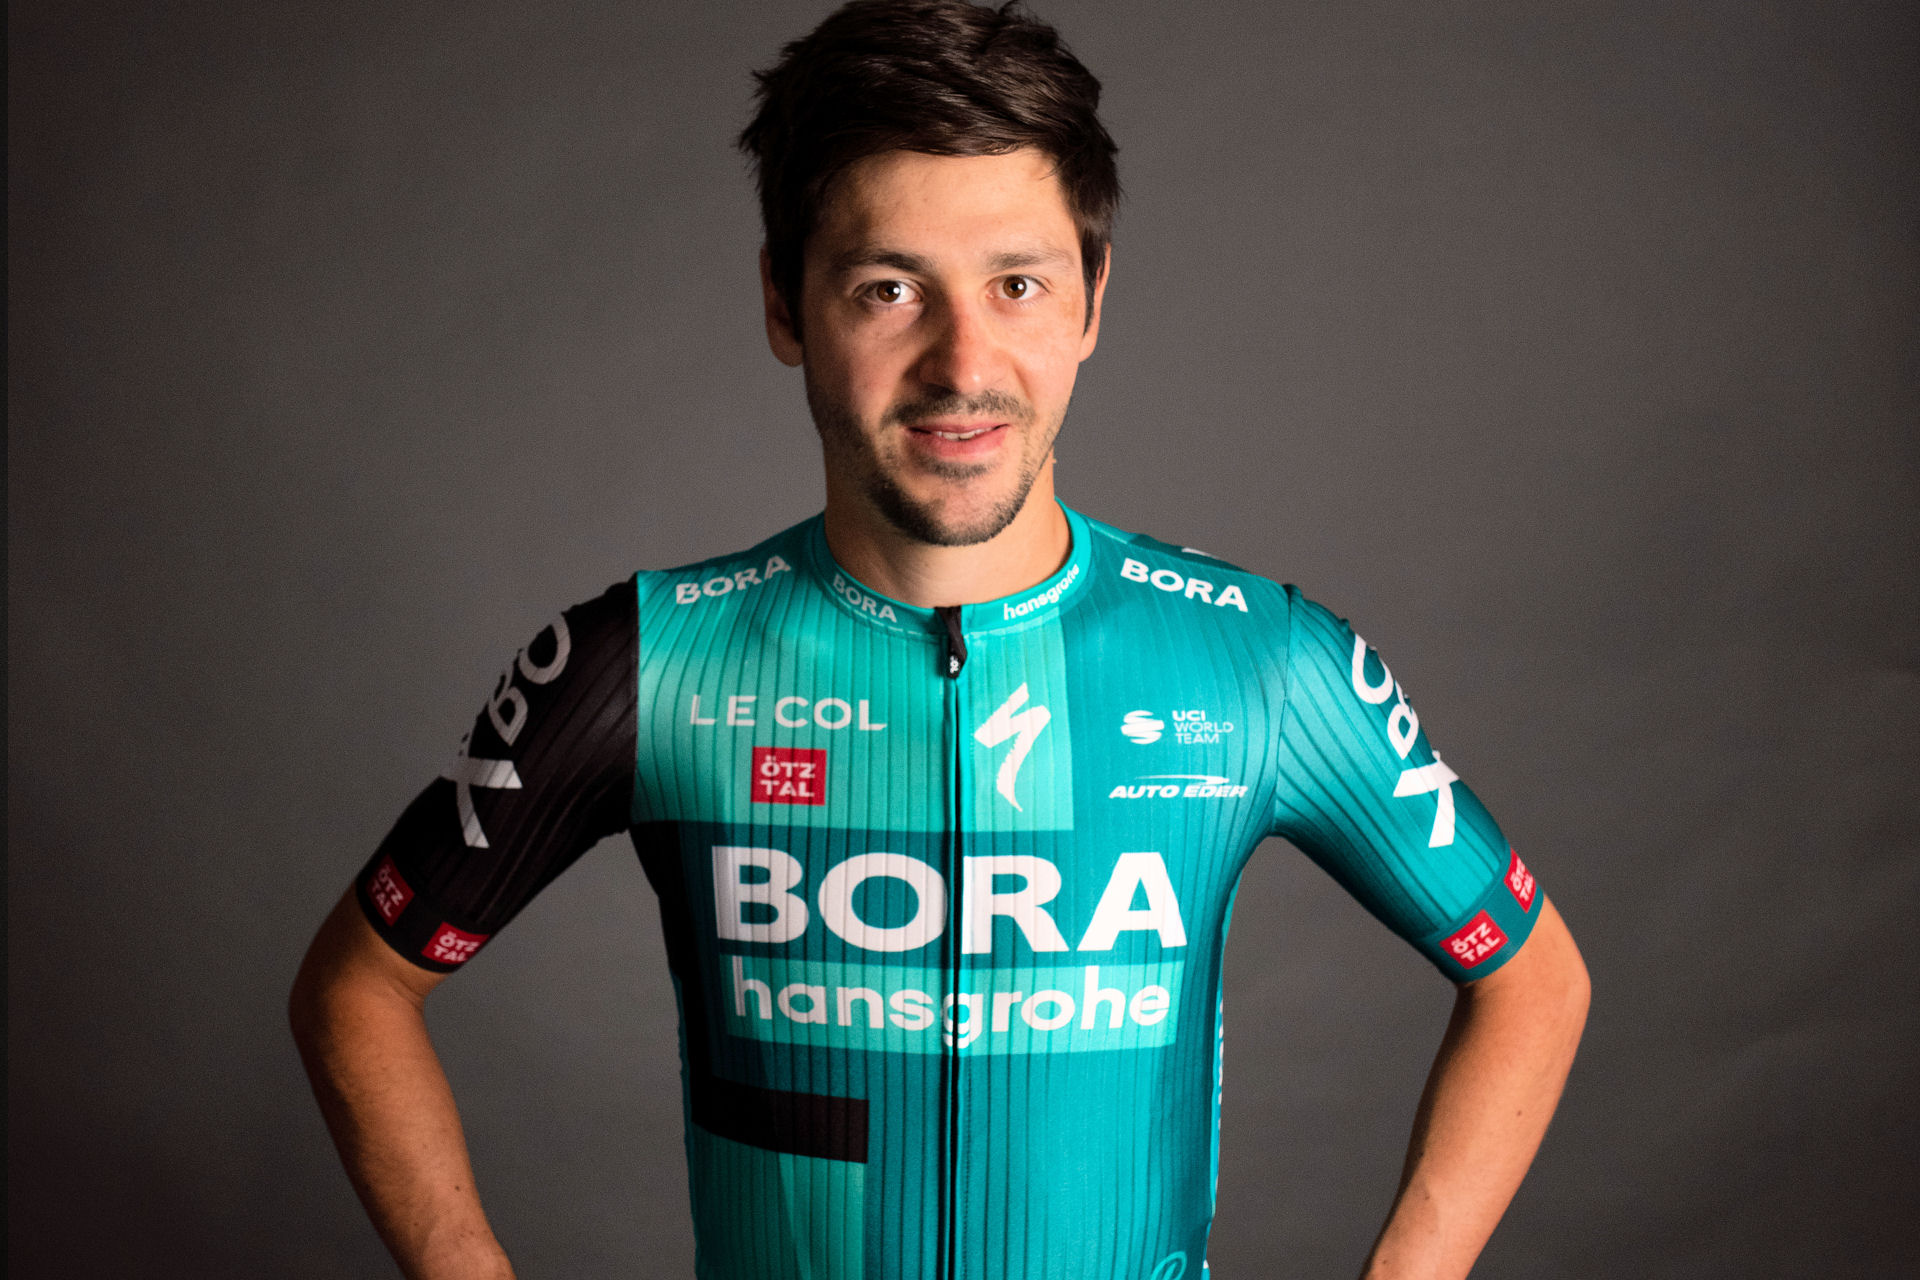 Emanuel Buchmann przygotowuje się do Giro d’Italia